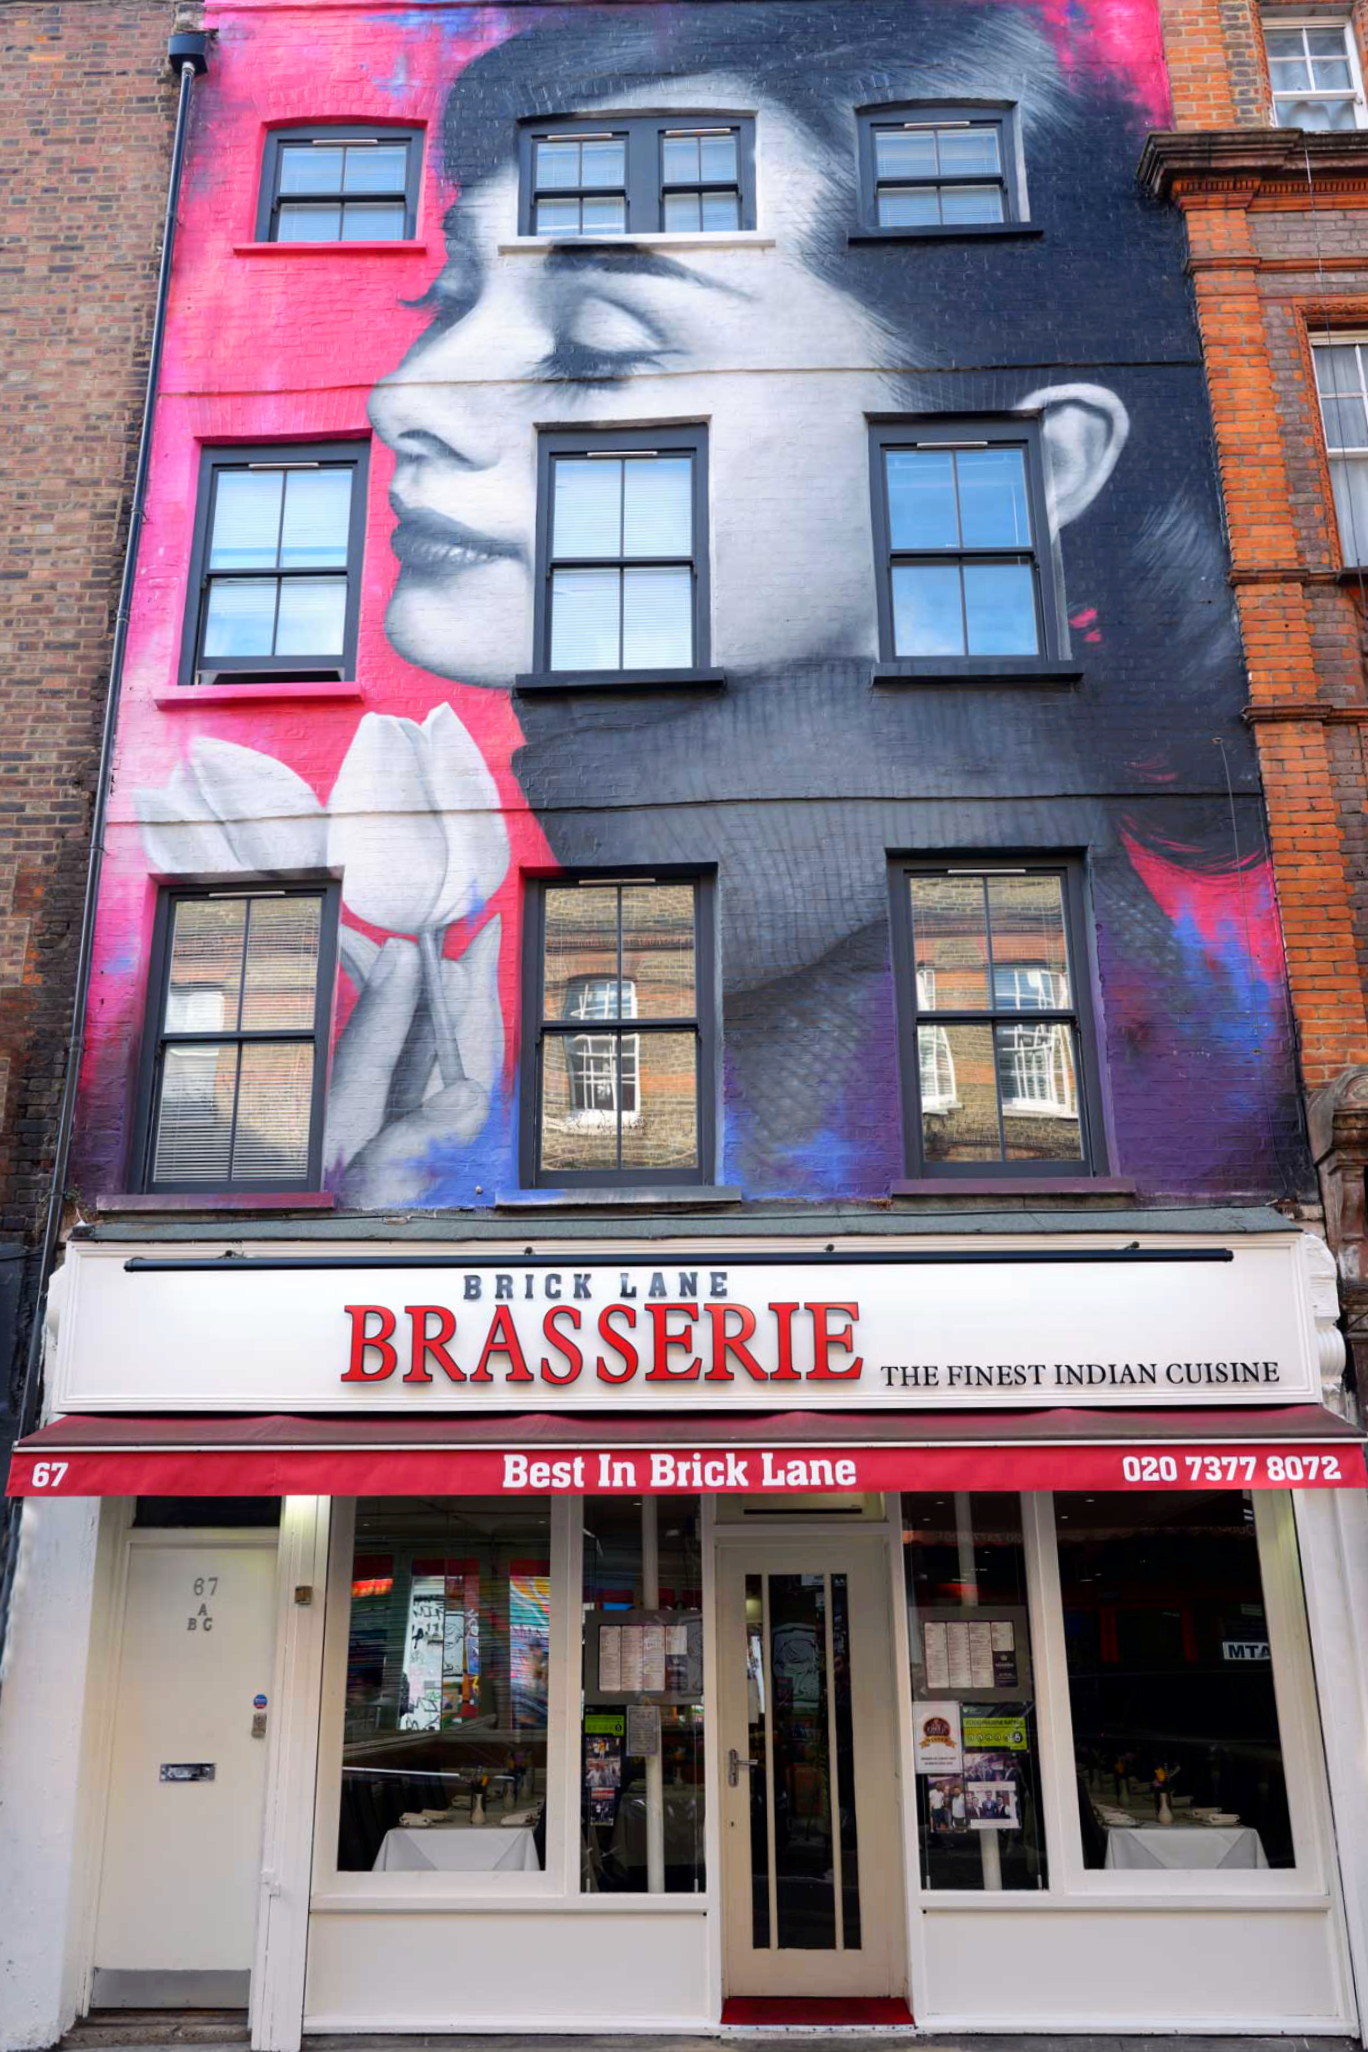 Brick Lane Brasserie restaurant, Brick Lane, East End of London.